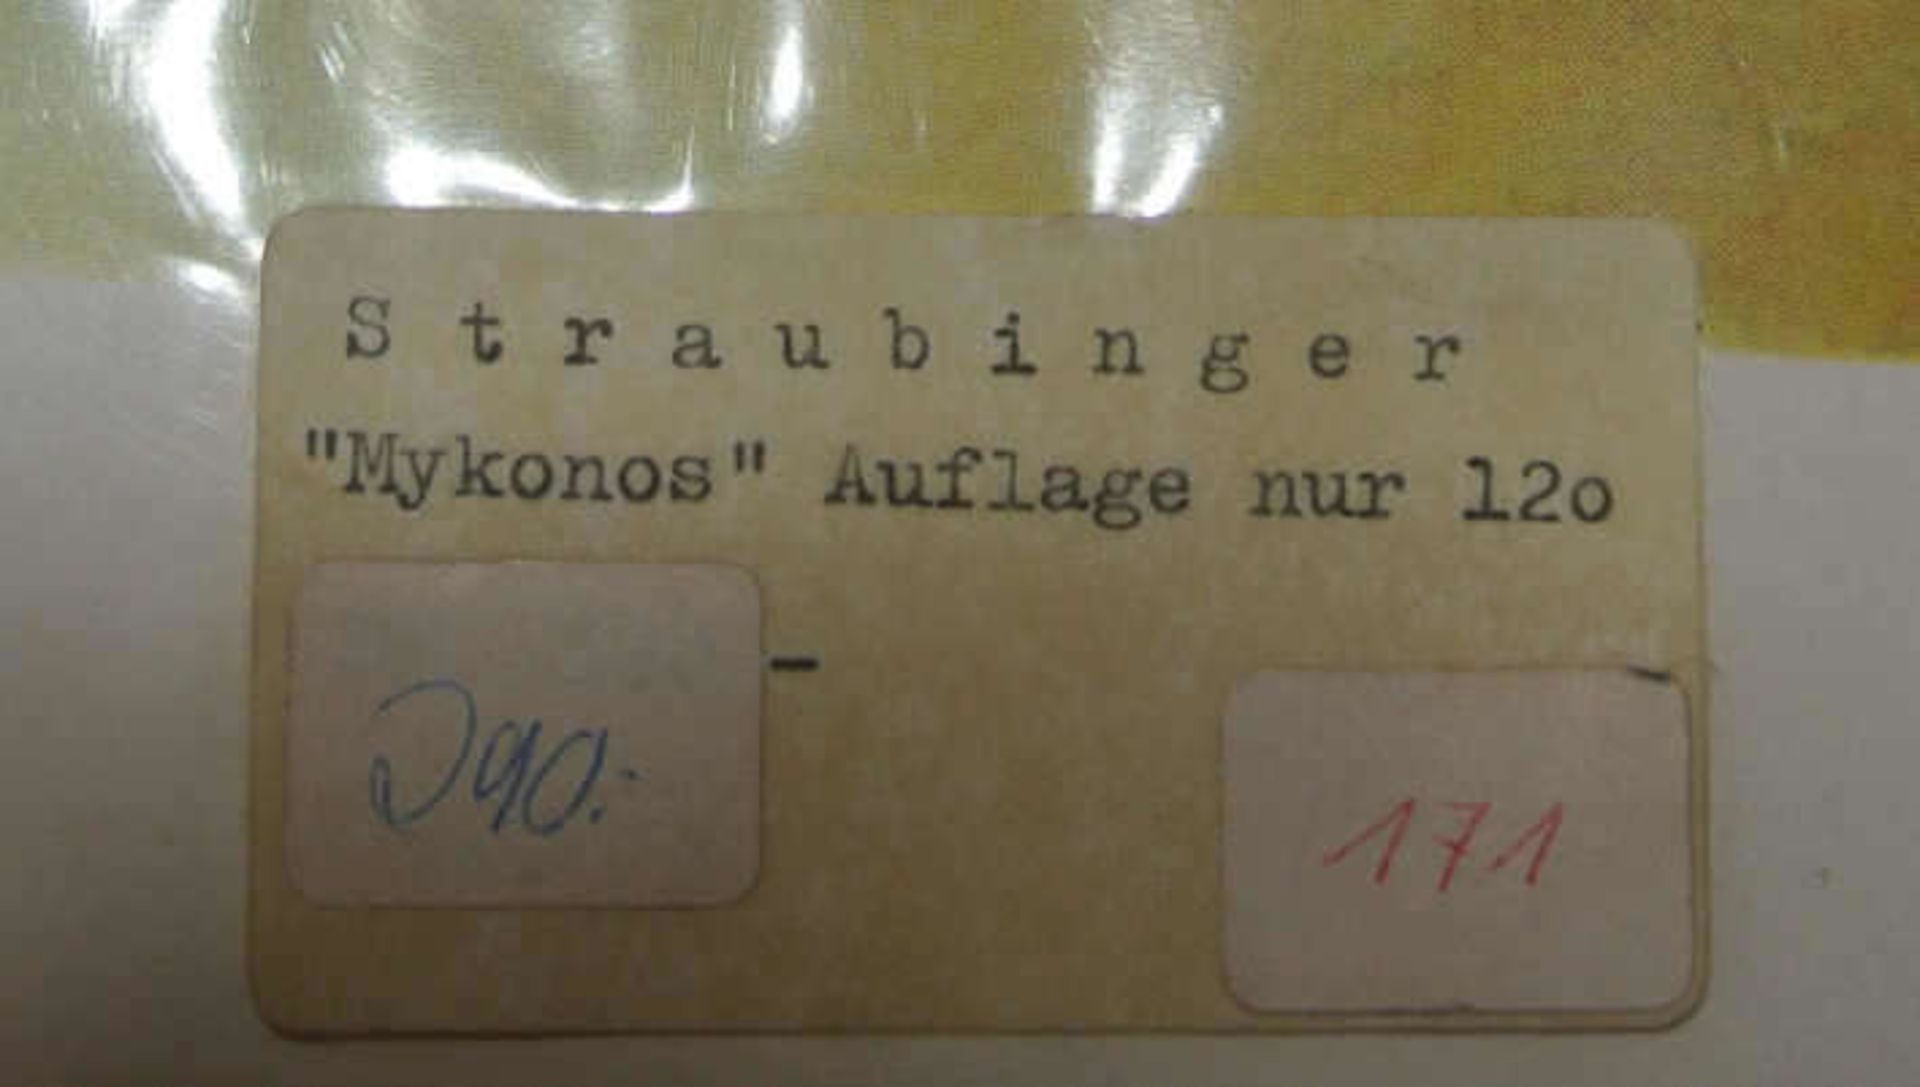 Klaus Straubinger, 1939, Lithographie "Mykonos", rechts unten Signatur Straubinger 76, Auflage 120 - Bild 2 aus 2